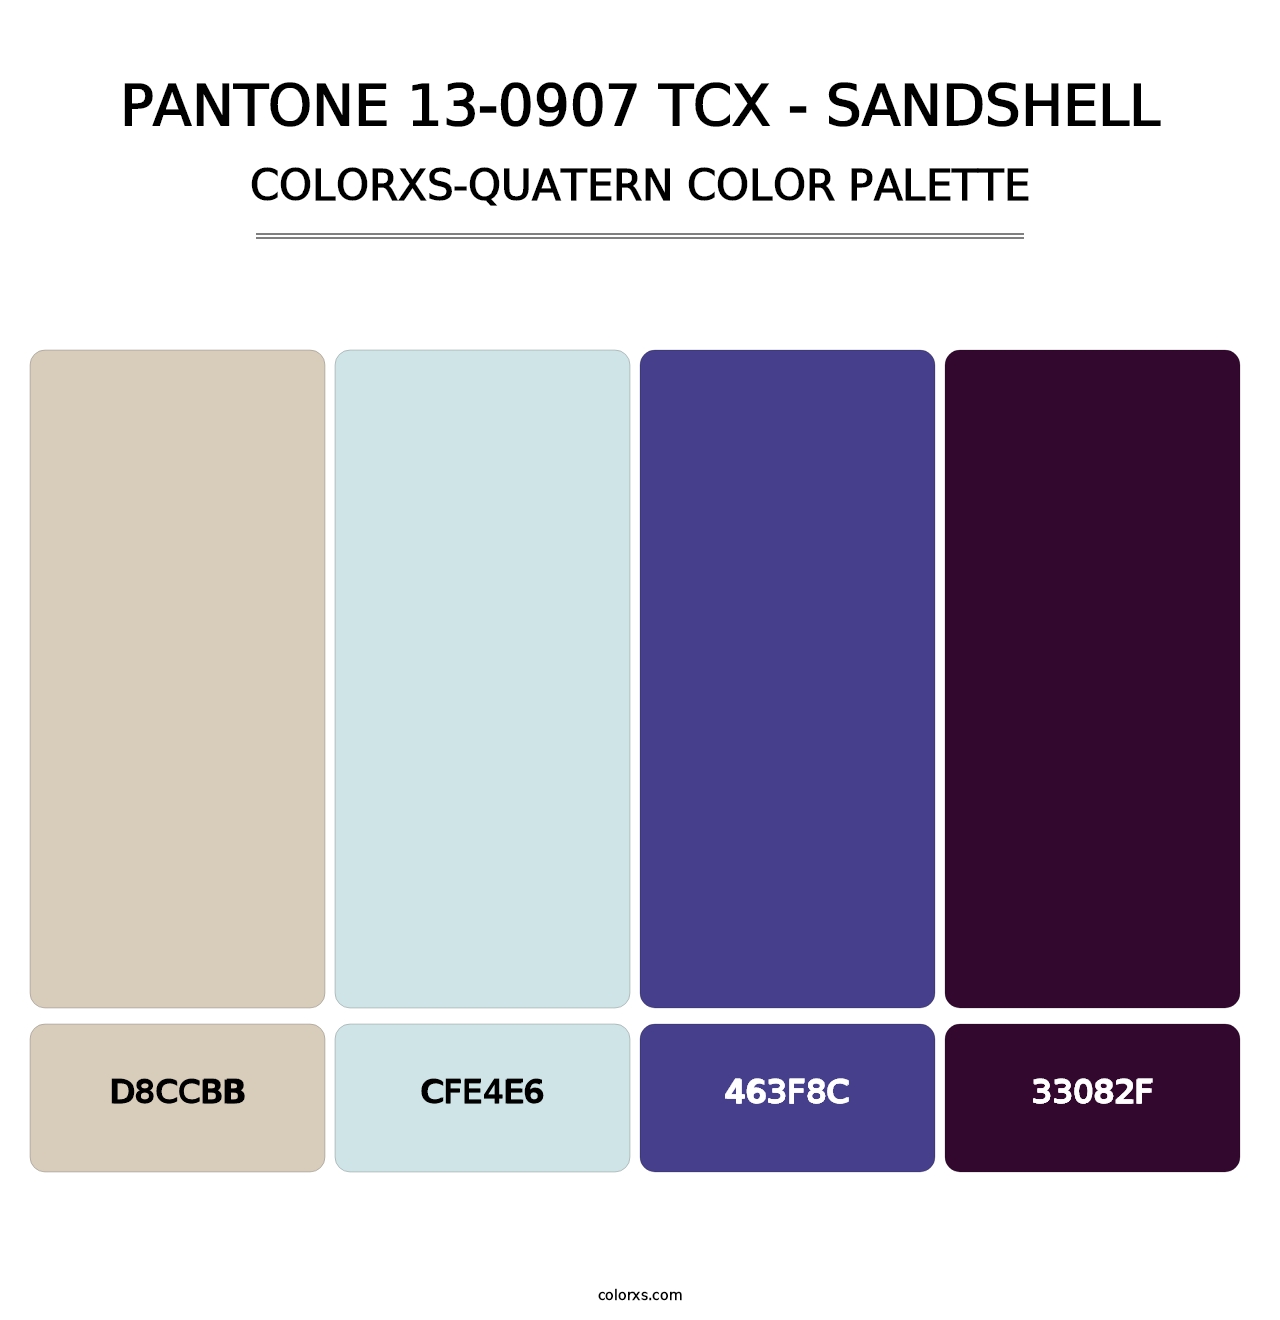 PANTONE 13-0907 TCX - Sandshell - Colorxs Quatern Palette